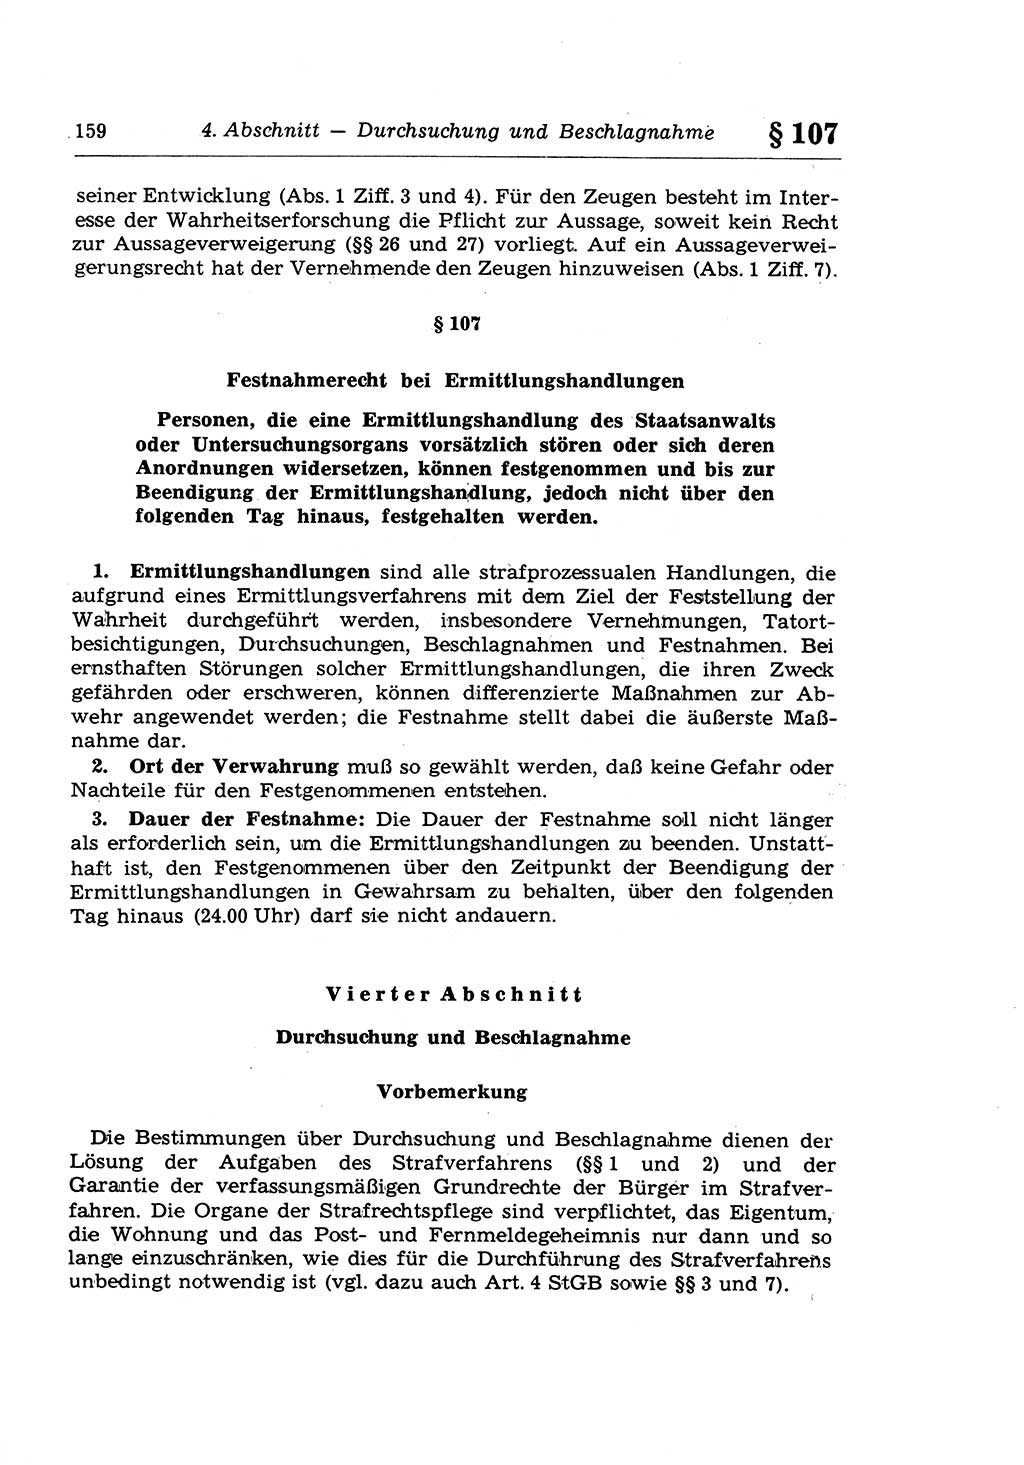 Strafprozeßrecht der DDR (Deutsche Demokratische Republik), Lehrkommentar zur Strafprozeßordnung (StPO) 1968, Seite 159 (Strafprozeßr. DDR Lehrkomm. StPO 19688, S. 159)